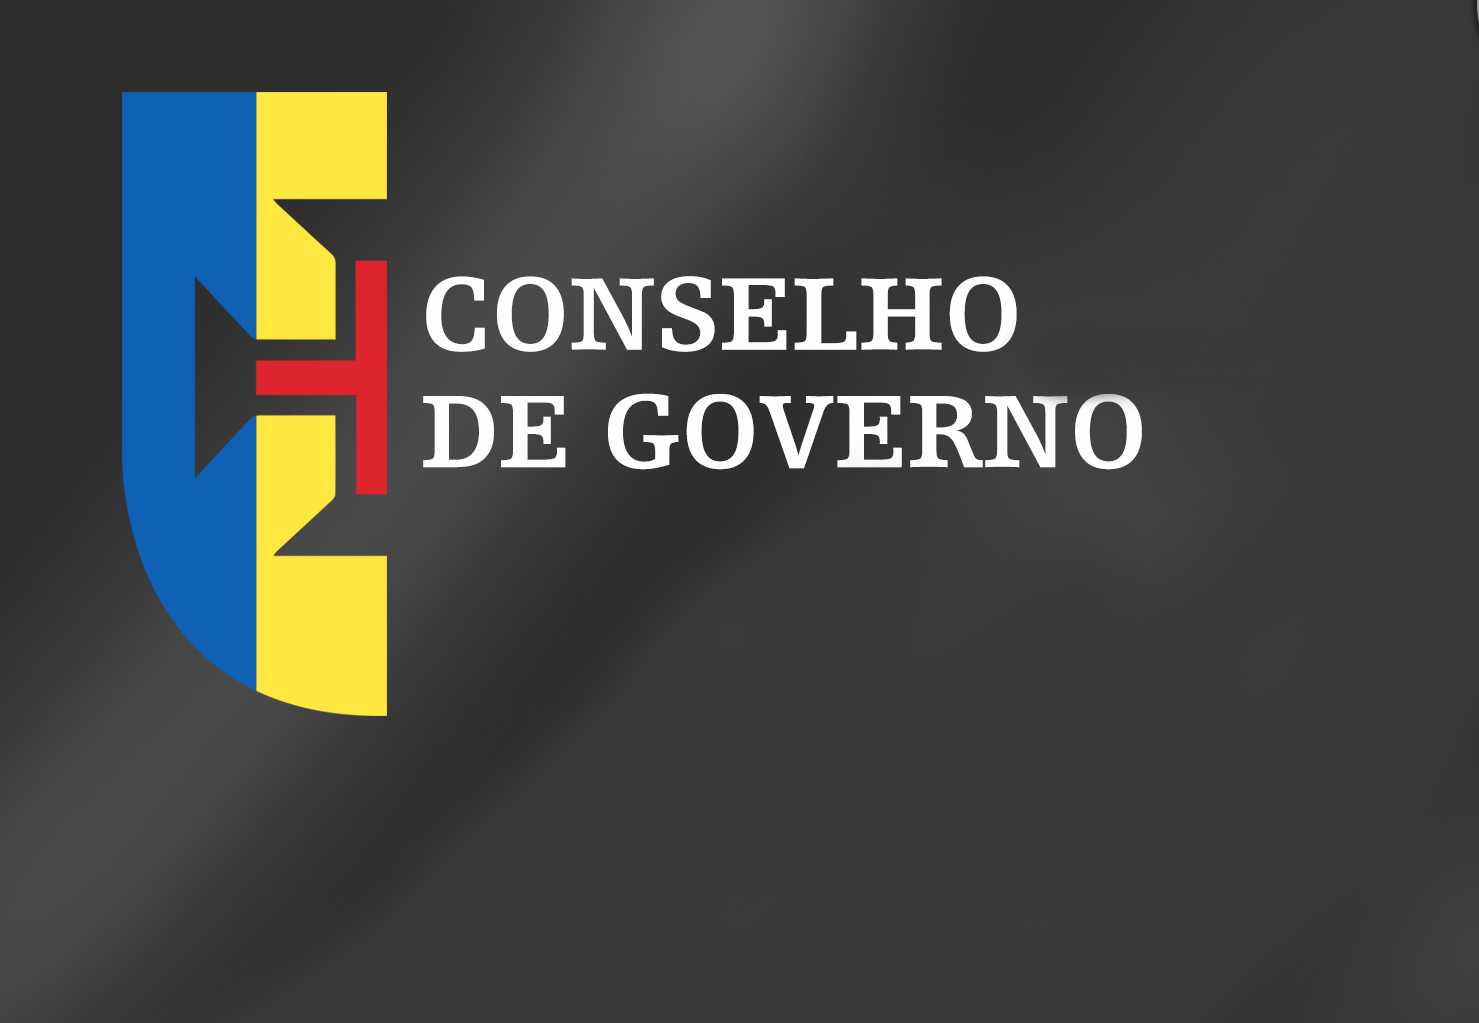 Conclusões Conselho de Governo - 18 de agosto de 2016